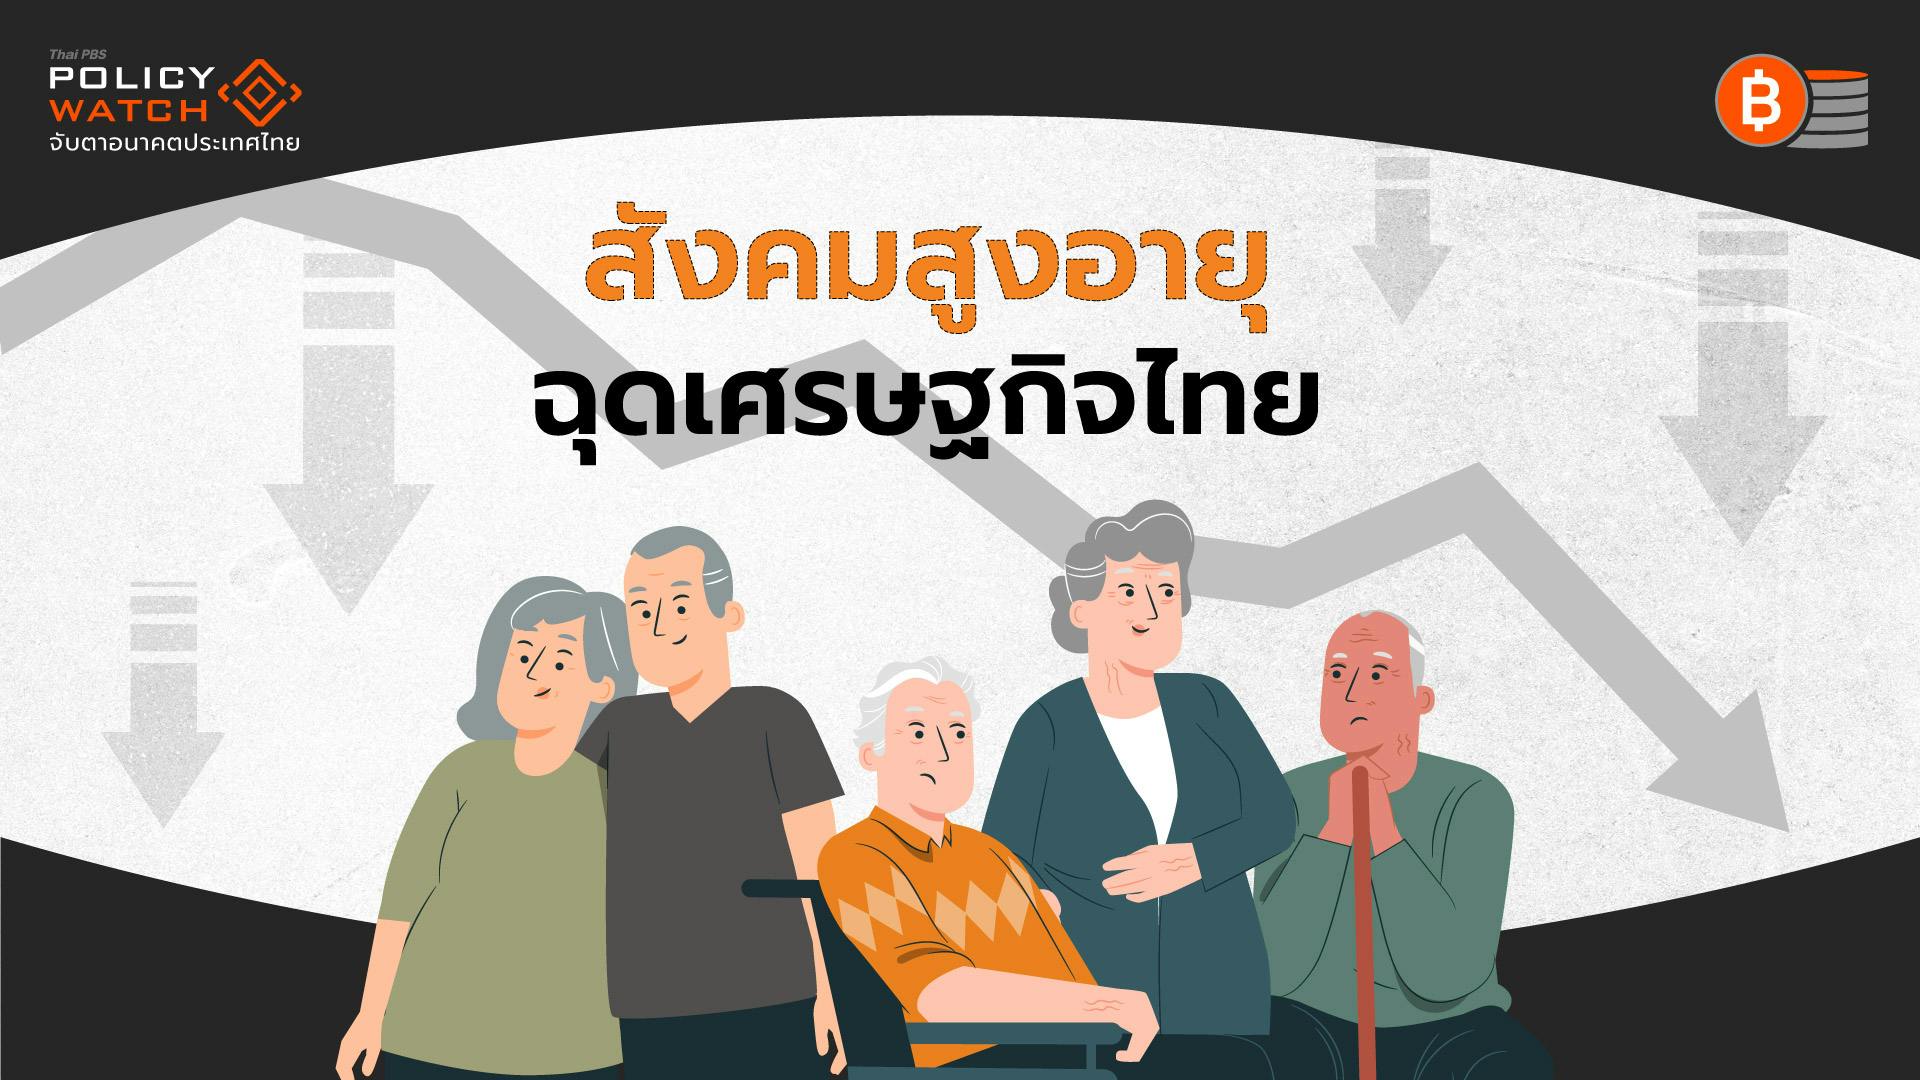 สังคมสูงอายุ กำลังฉุดเศรษฐกิจไทย แย่กว่าทุกวิกฤต